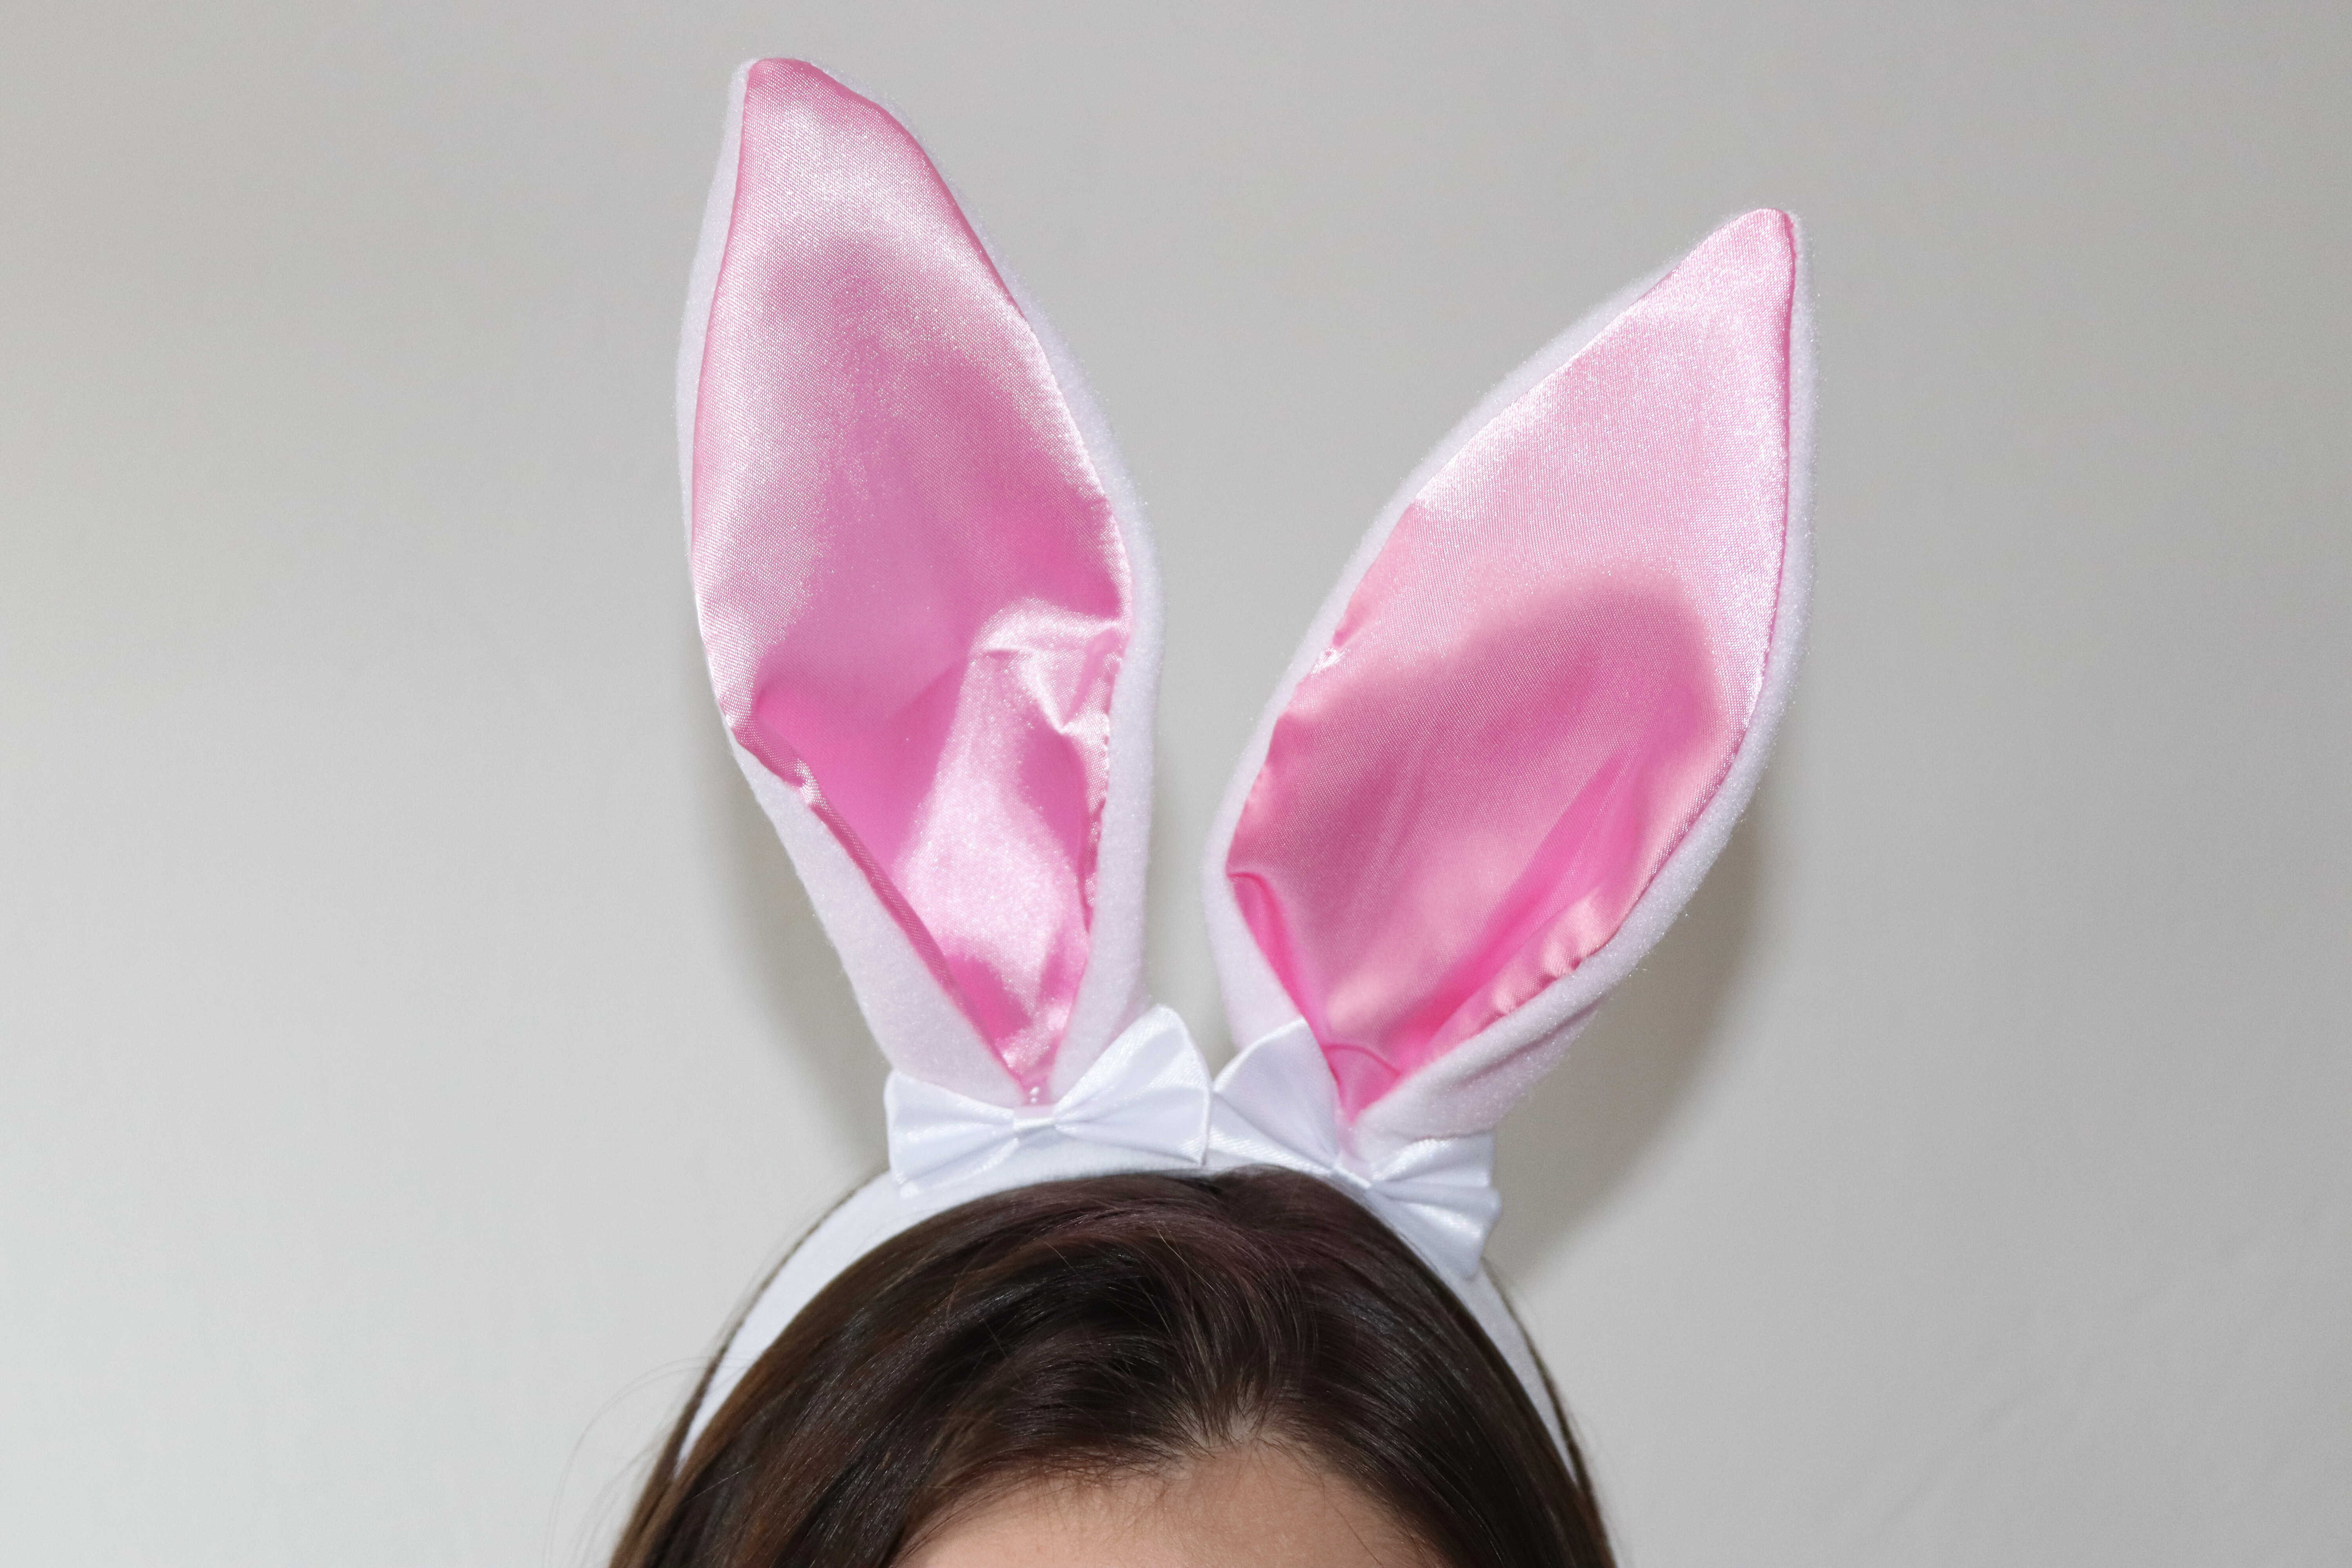 Obsessive kostým Pink Bunny, testerka Jenny